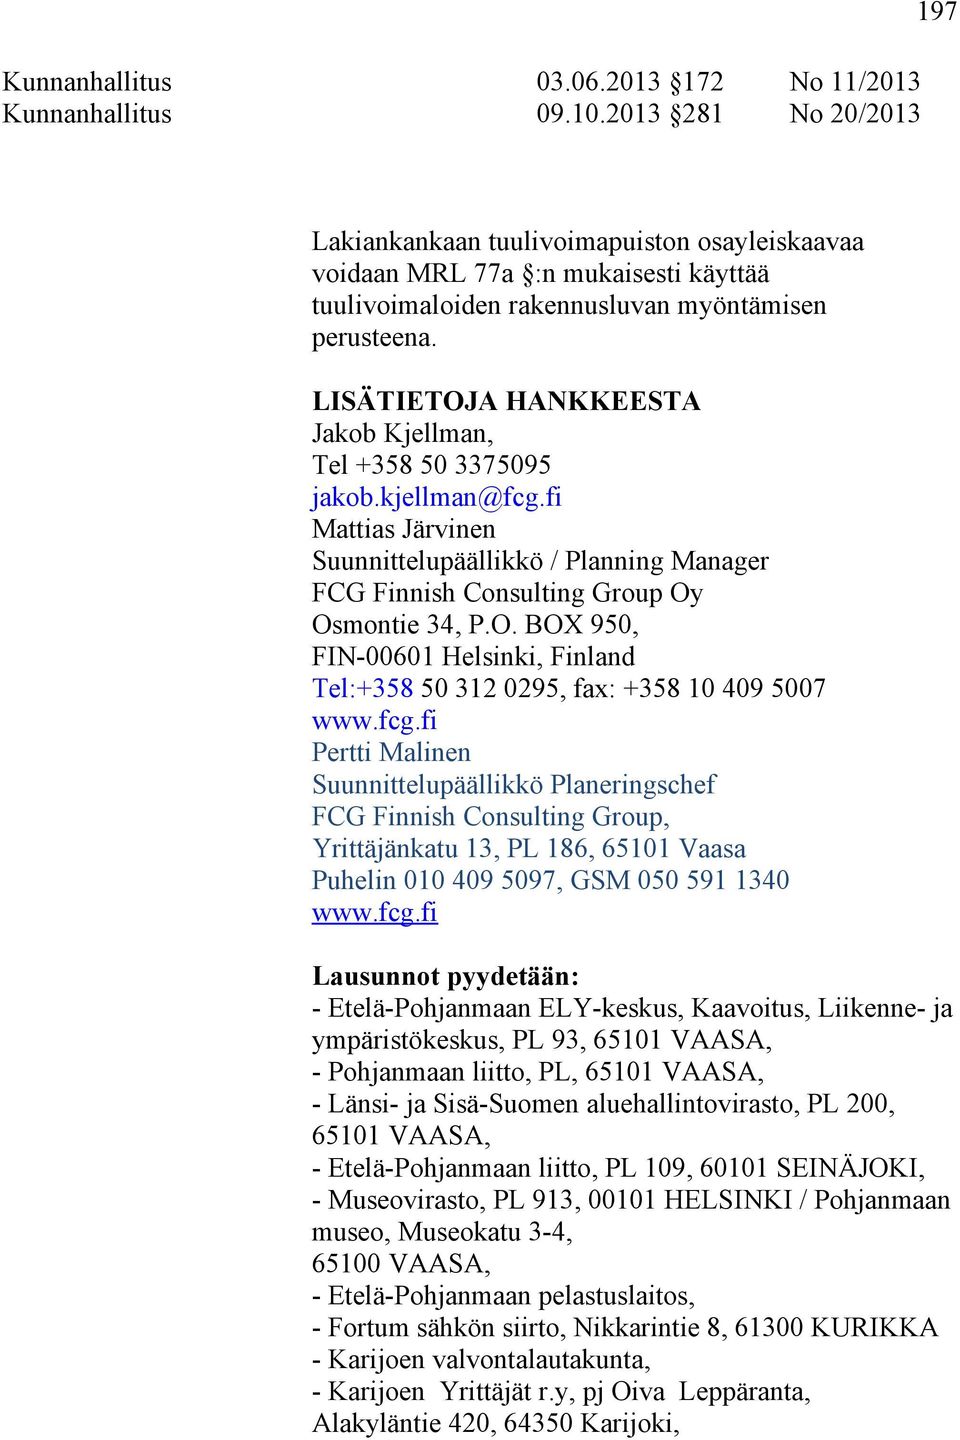 LISÄTIETOJA HANKKEESTA Jakob Kjellman, Tel +358 50 3375095 jakob.kjellman@fcg.fi Mattias Järvinen Suunnittelupäällikkö / Planning Manager FCG Finnish Consulting Group Oy Osmontie 34, P.O. BOX 950, FIN-00601 Helsinki, Finland Tel:+358 50 312 0295, fax: +358 10 409 5007 www.